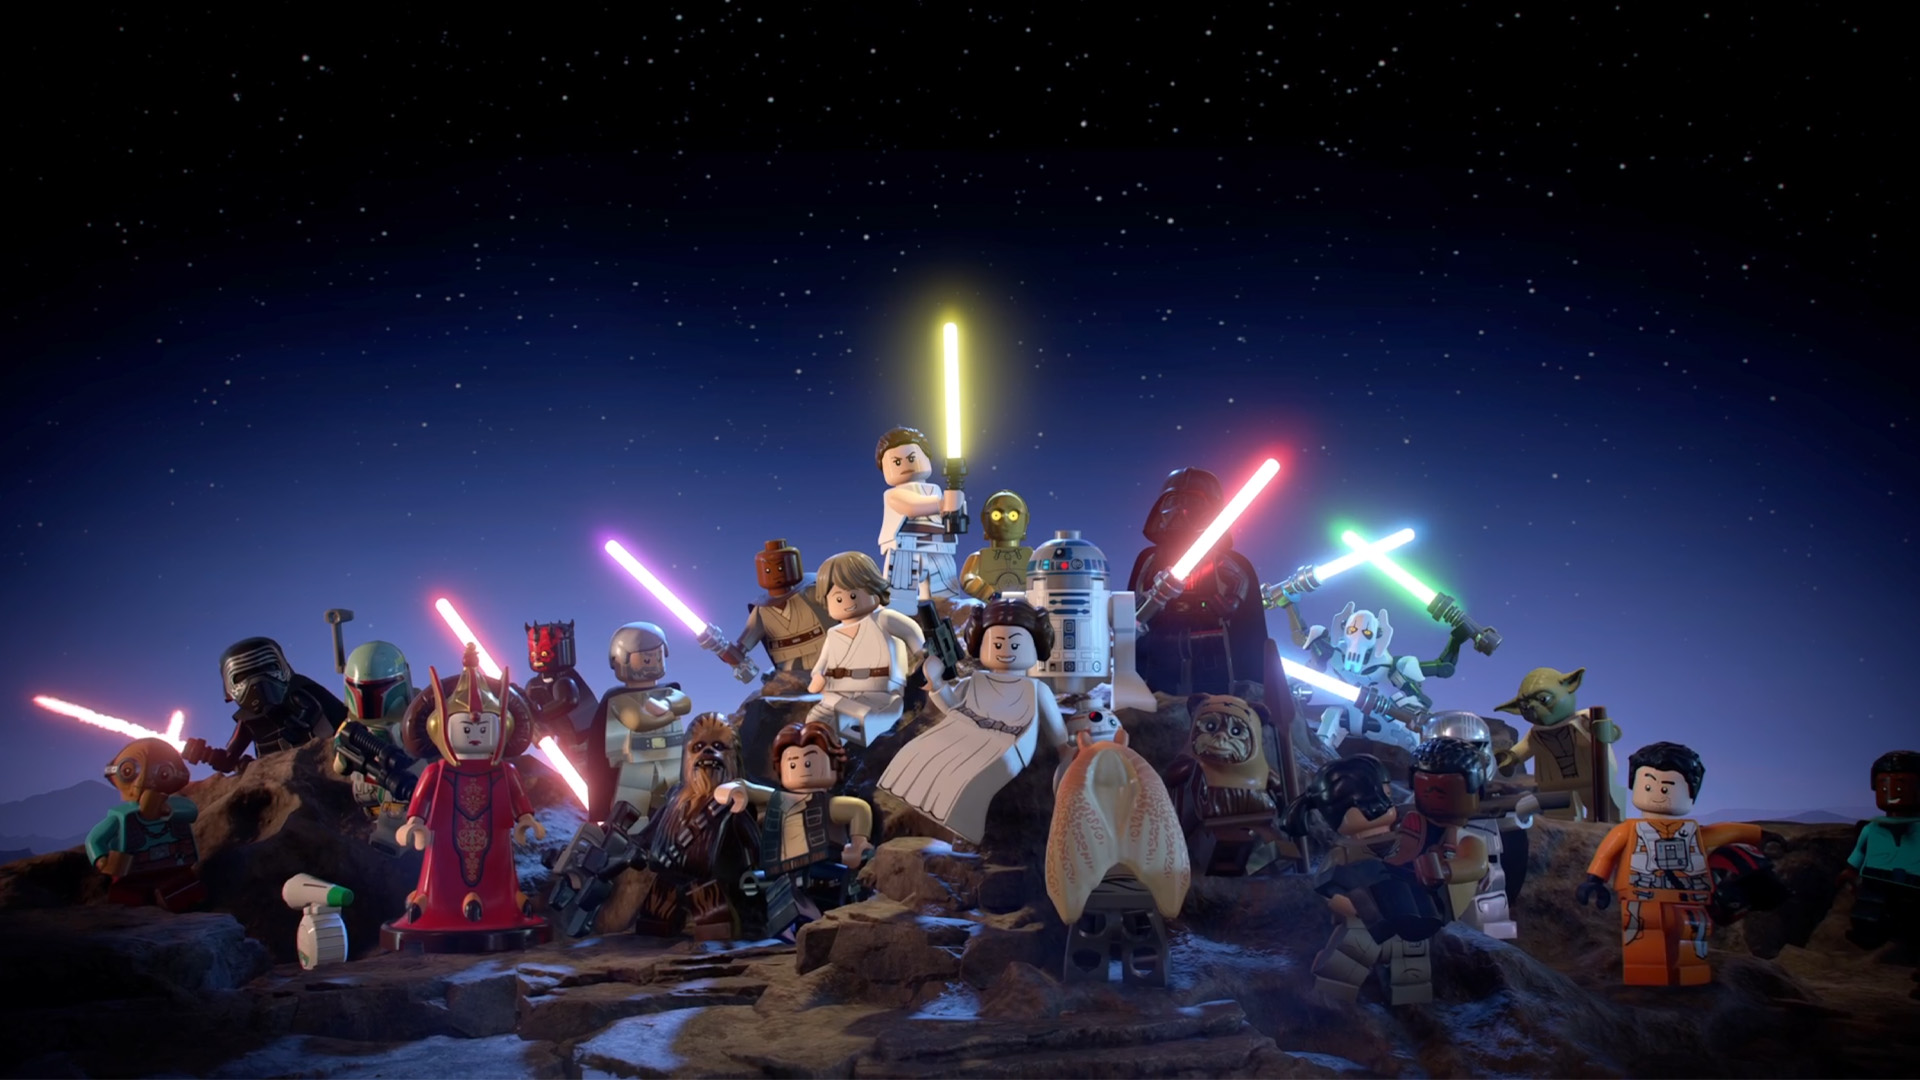 Lego Star Wars Skywalker Saga characters